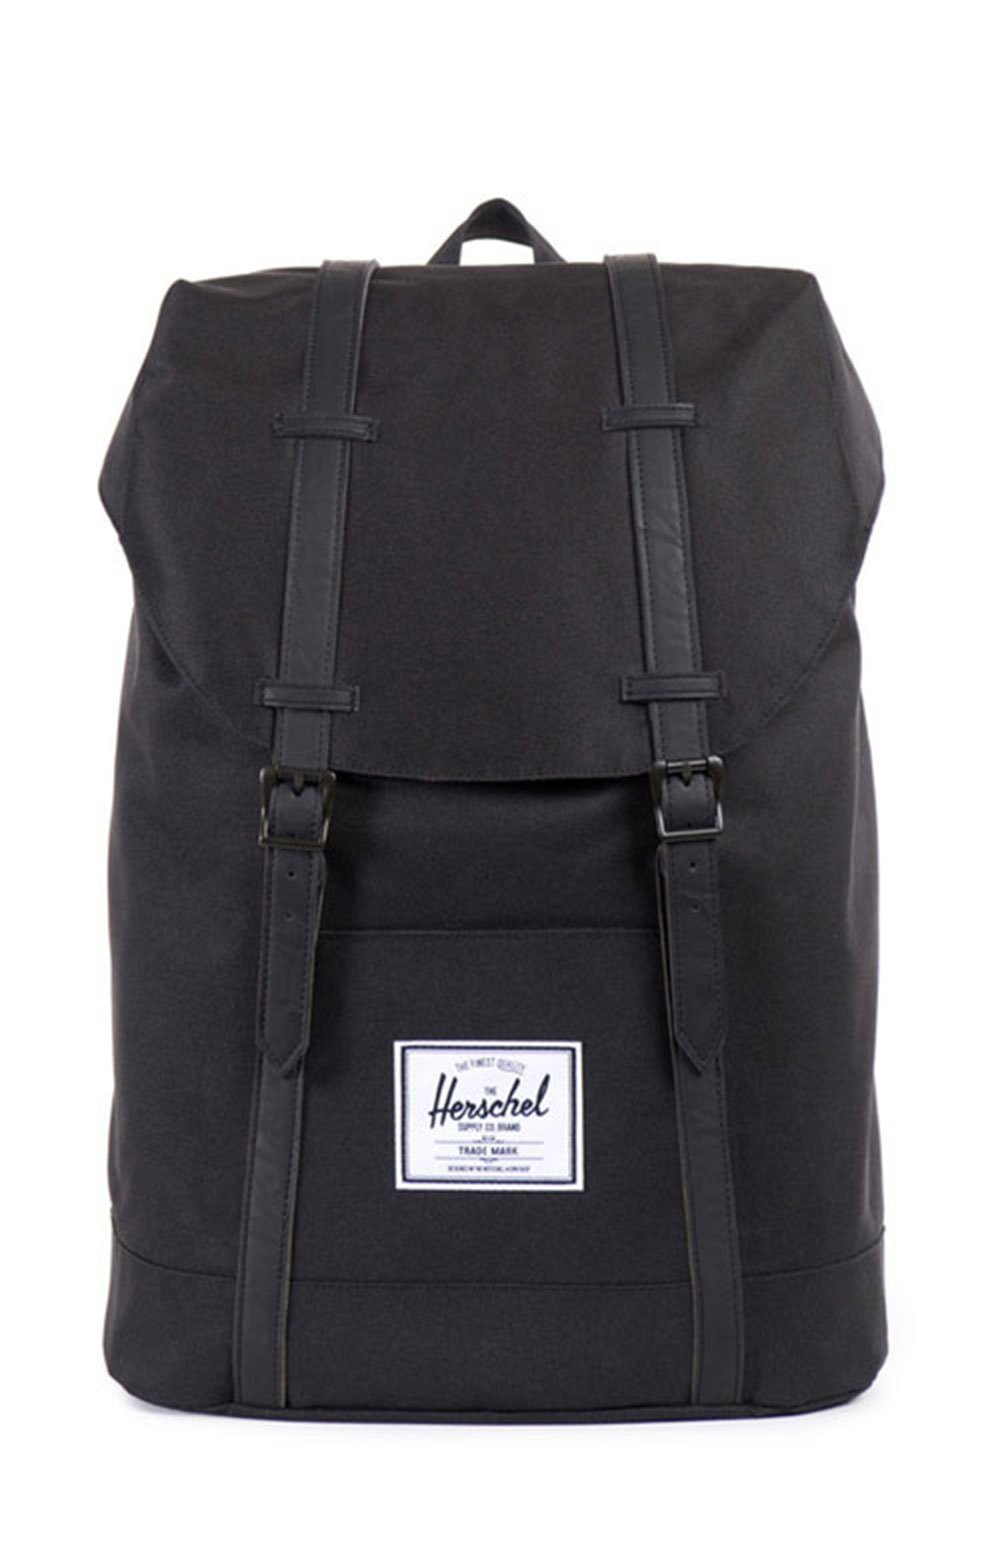 Retreat Backpack - Black/Black PU